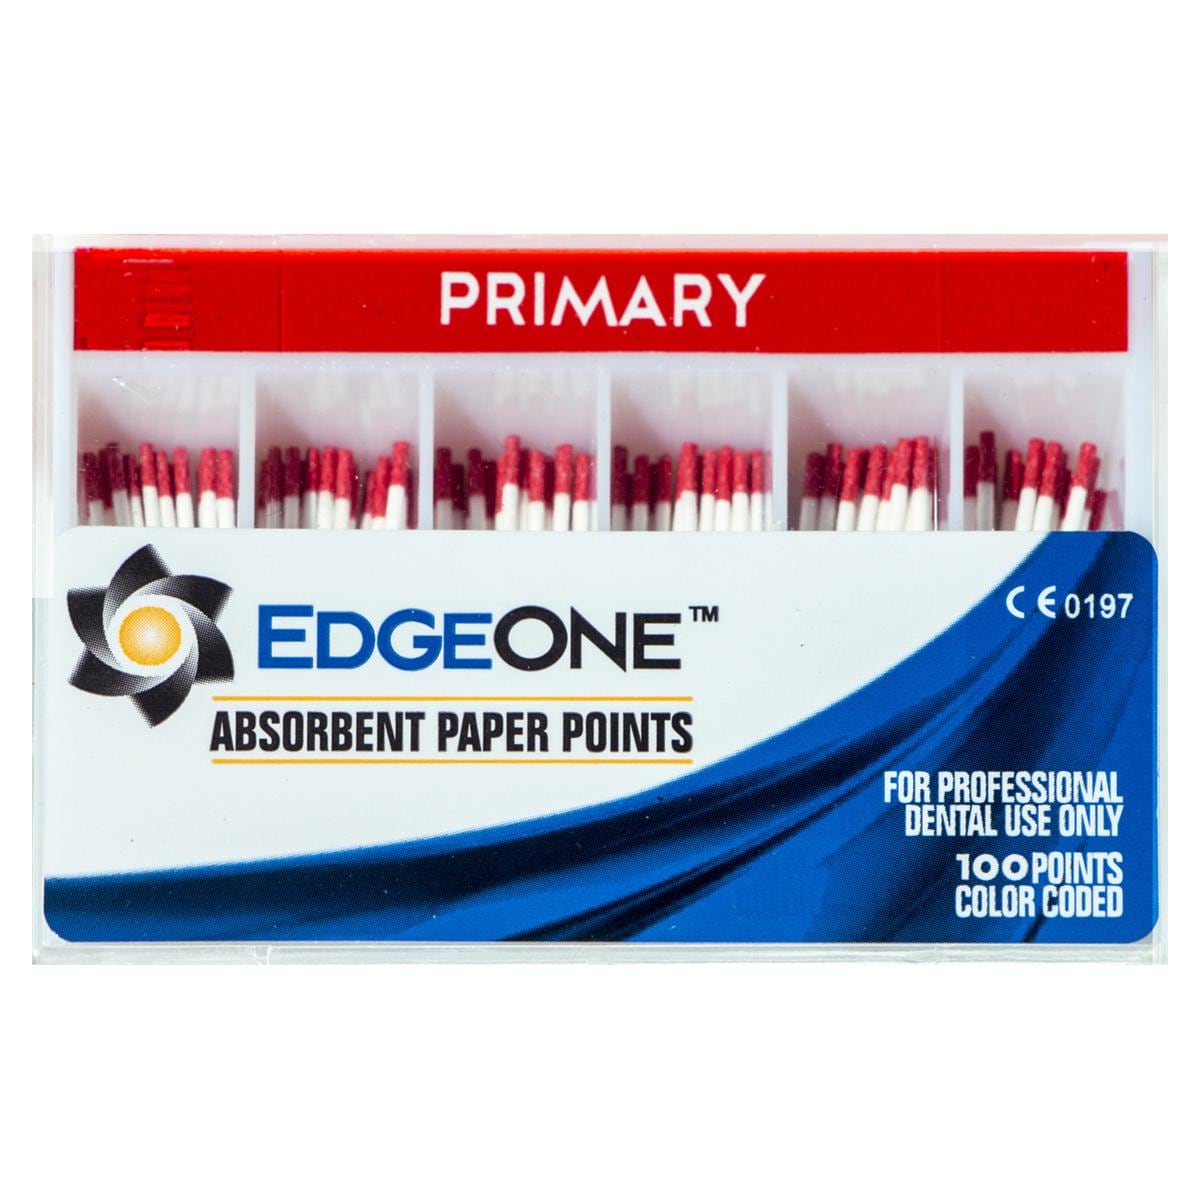 Pointes en papier absorbant EdgeOne - Primary (rouge), 100 pcs